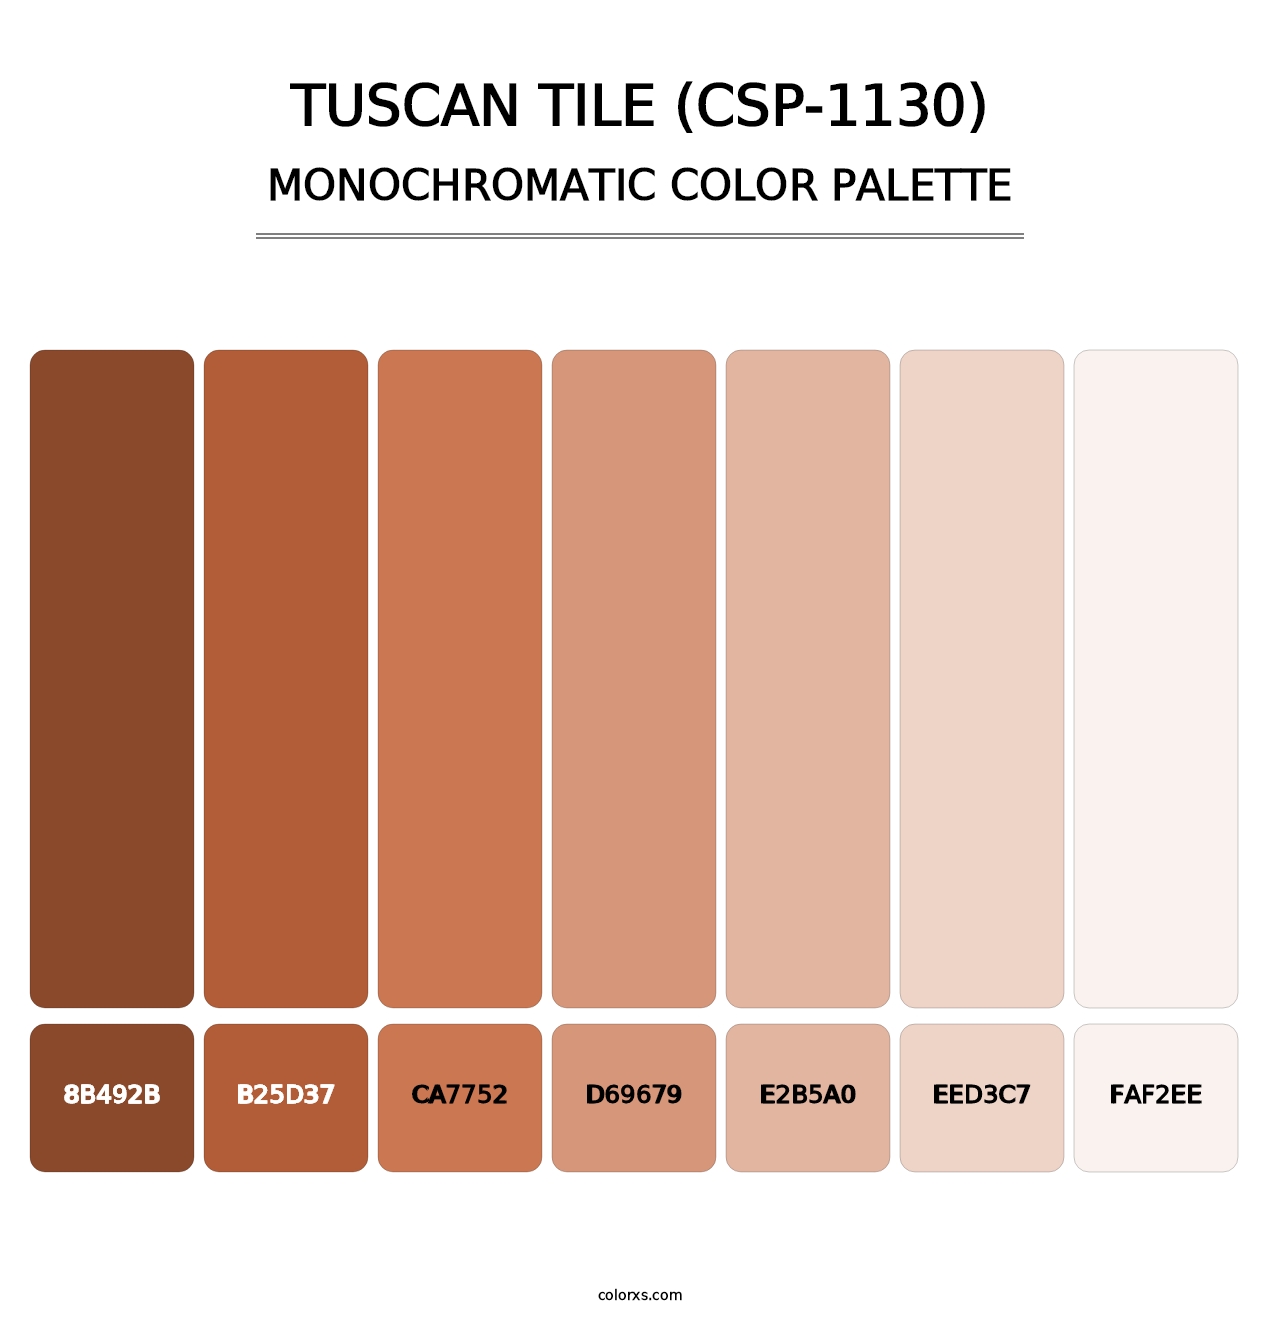 Tuscan Tile (CSP-1130) - Monochromatic Color Palette